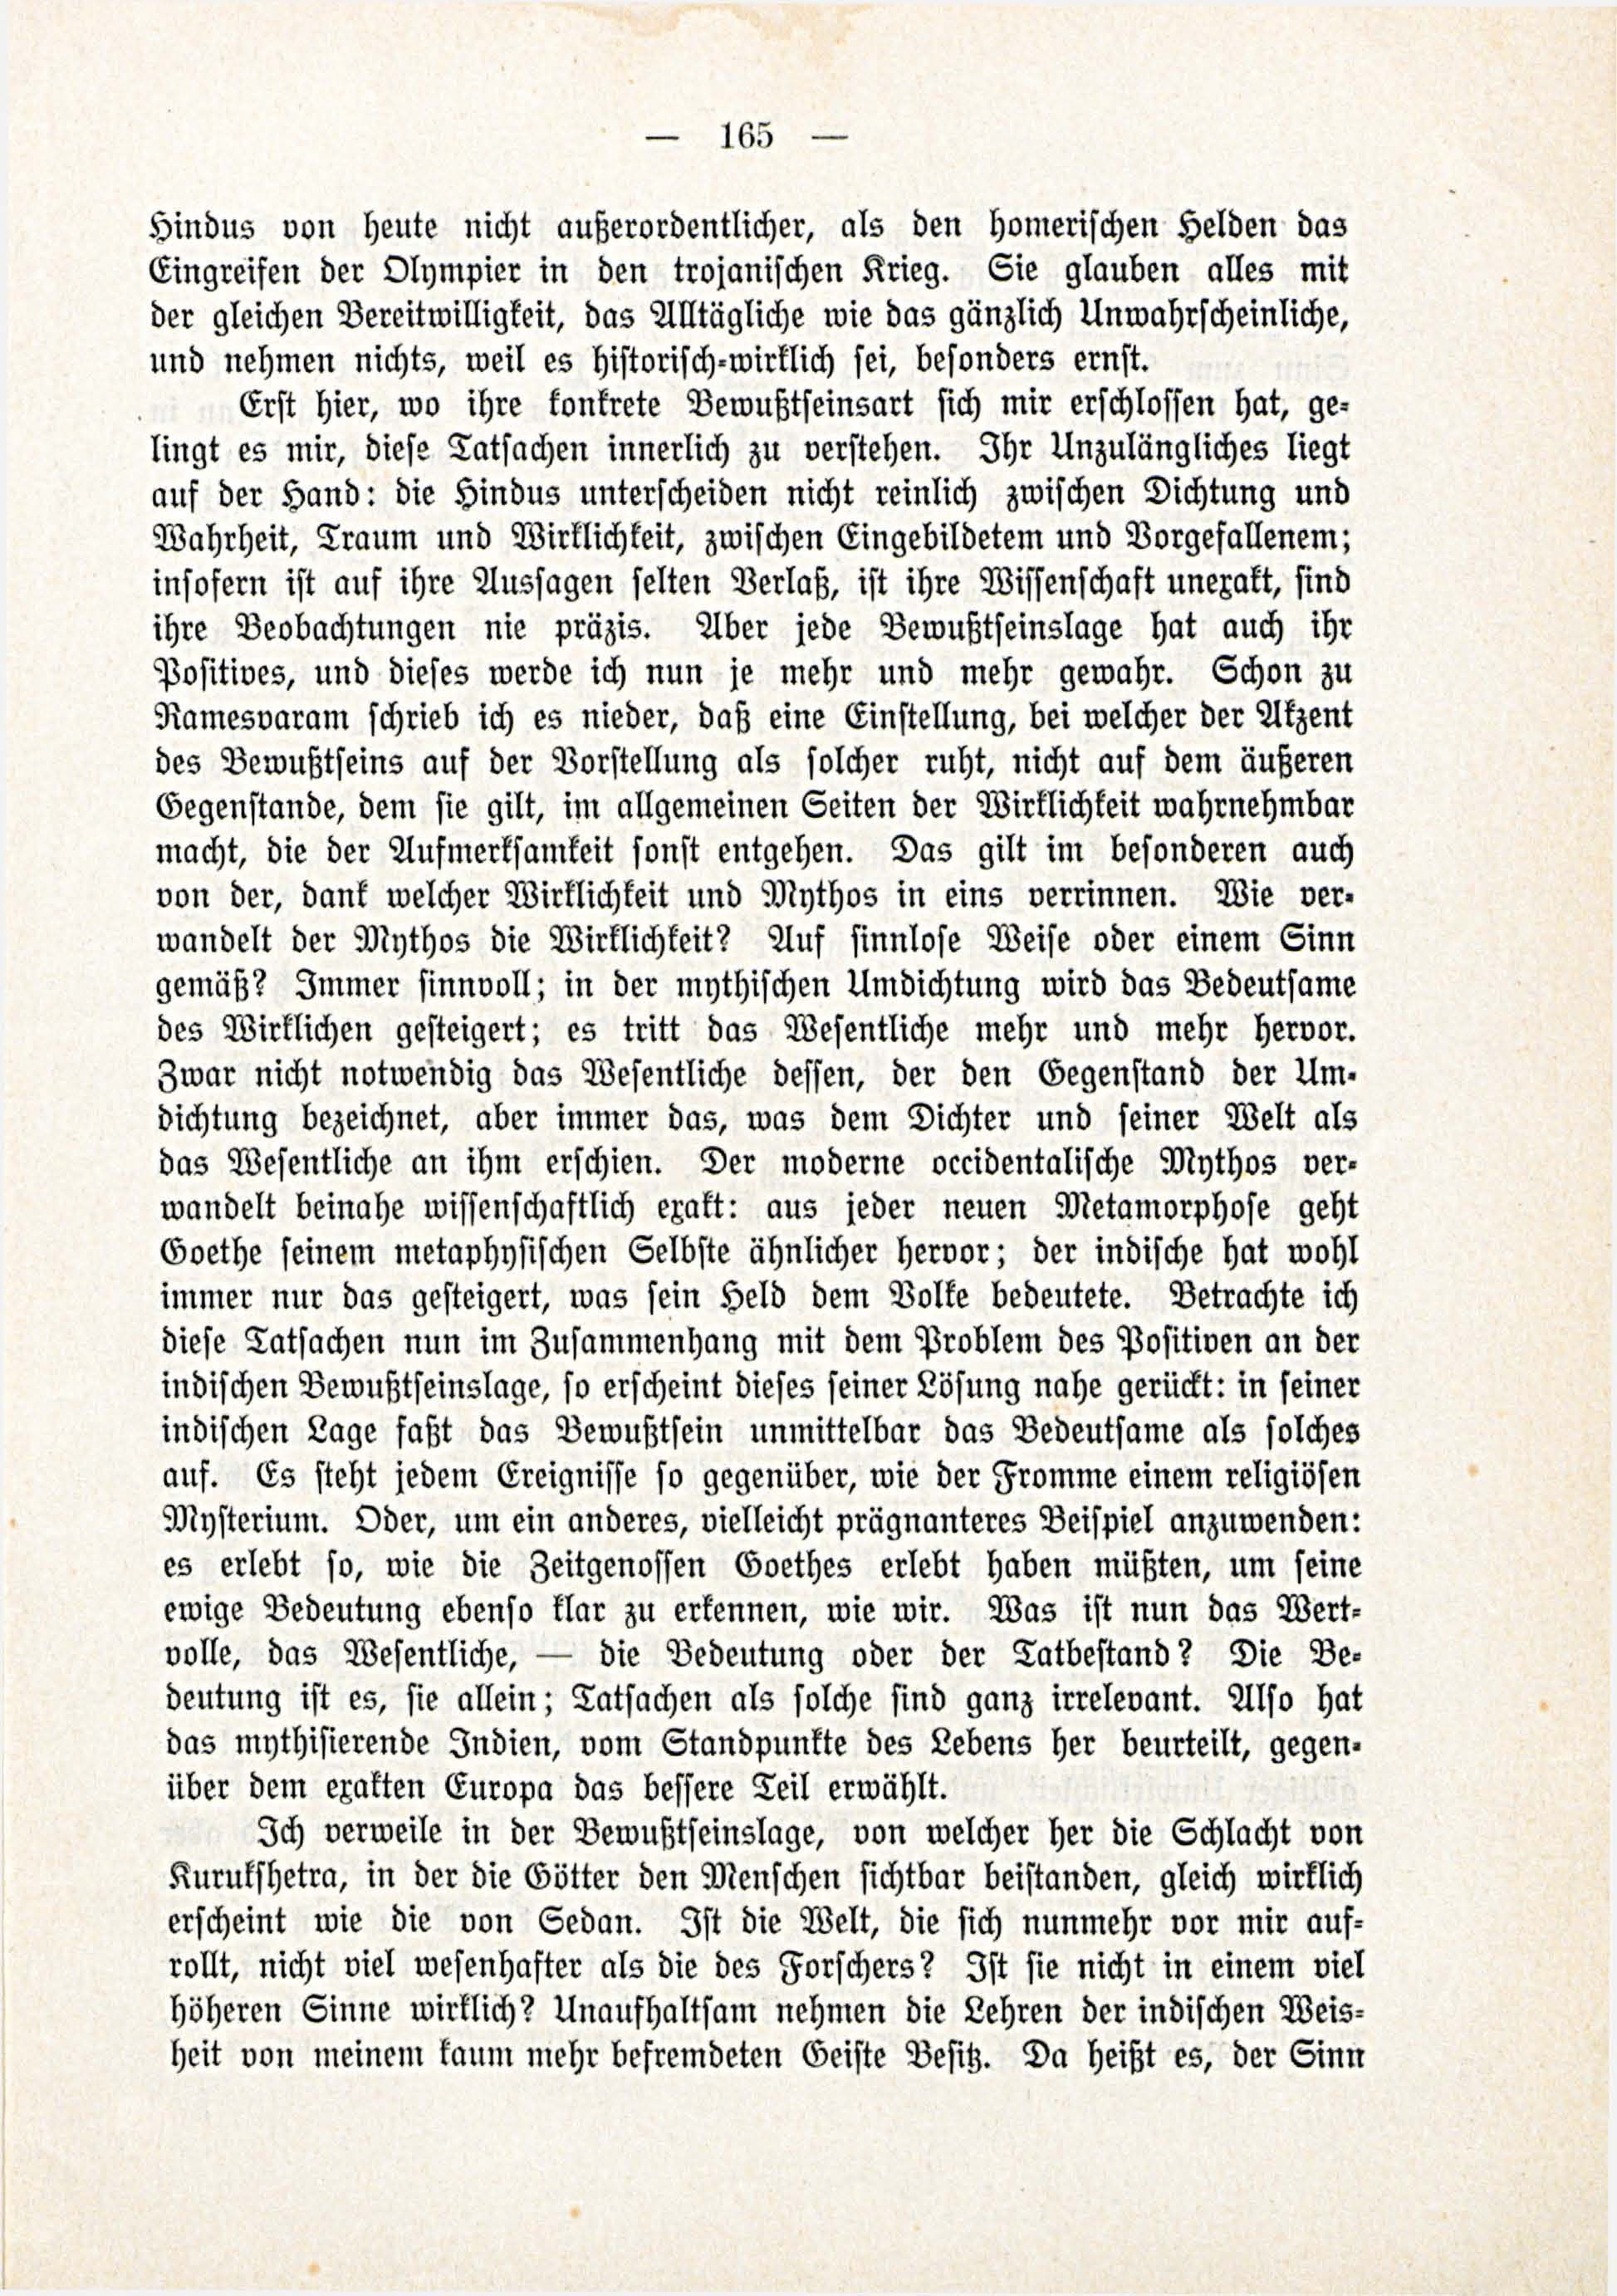 Deutsche Monatsschrift für Russland [3/03] (1914) | 11. (165) Põhitekst